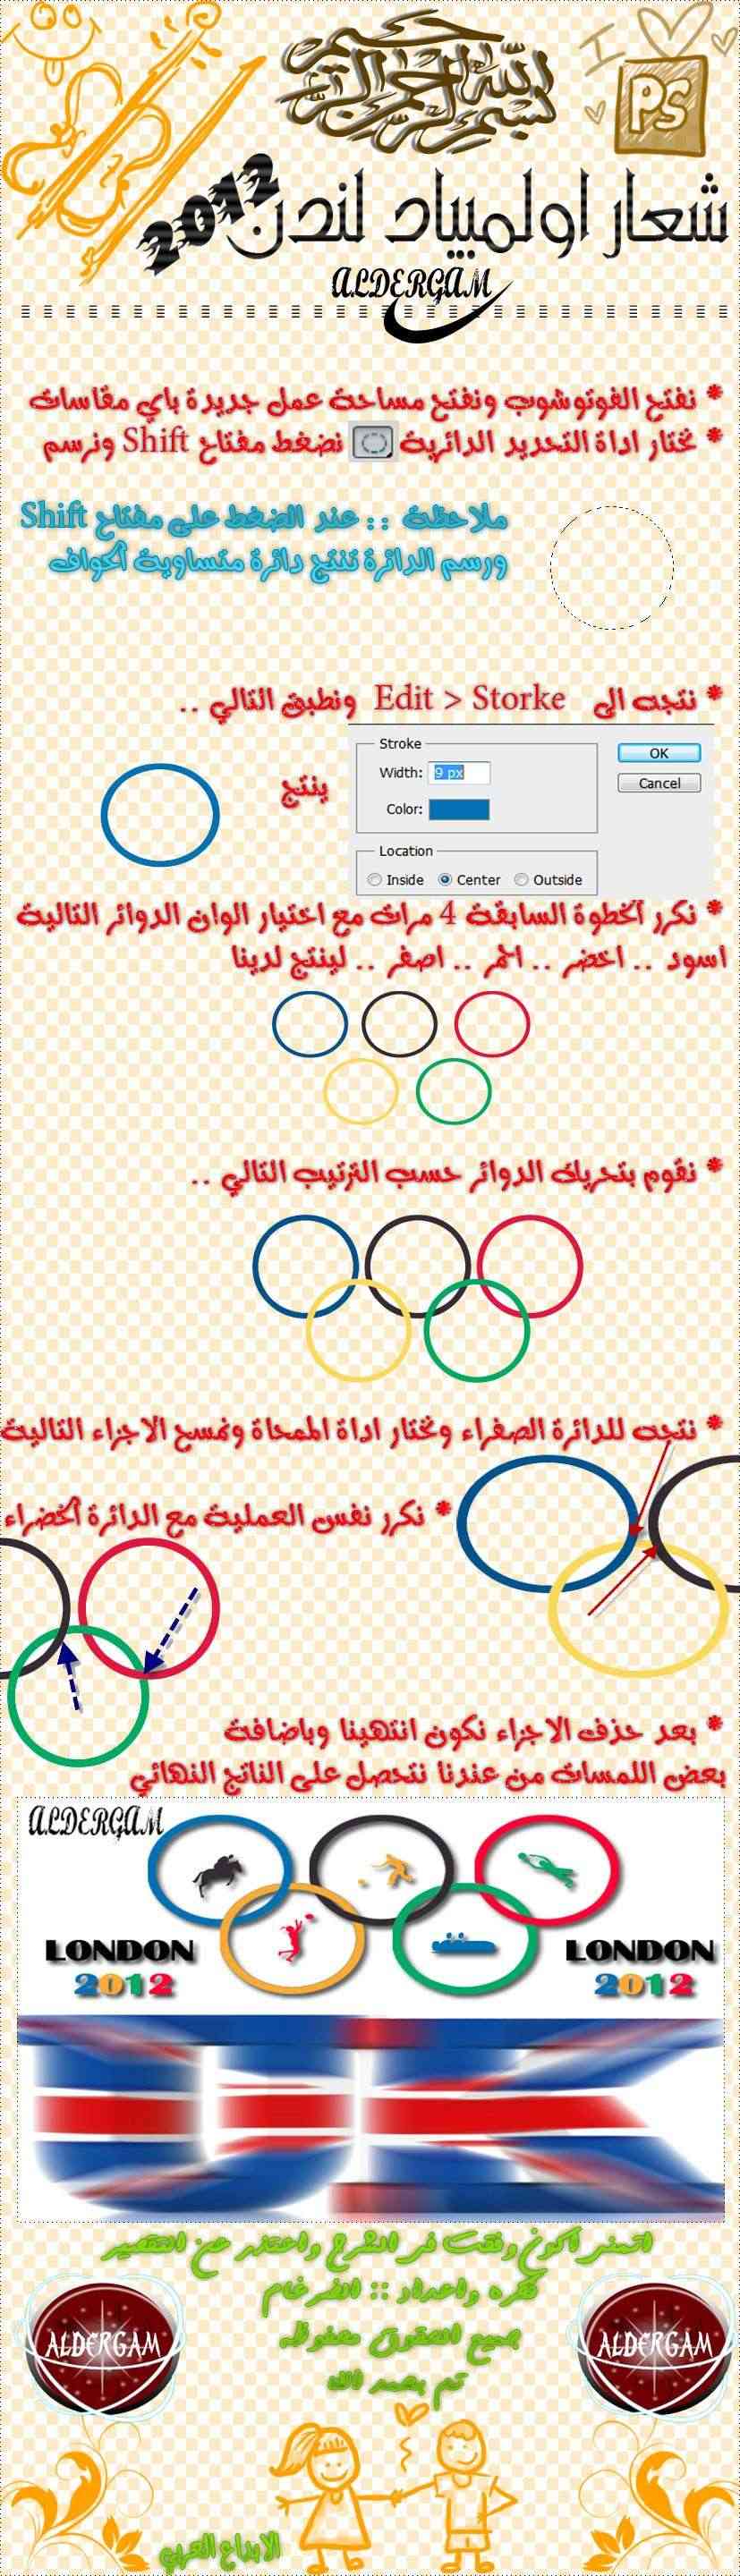 تصميمـ شعار اولمبياد لندن  - صفحة 2 London12